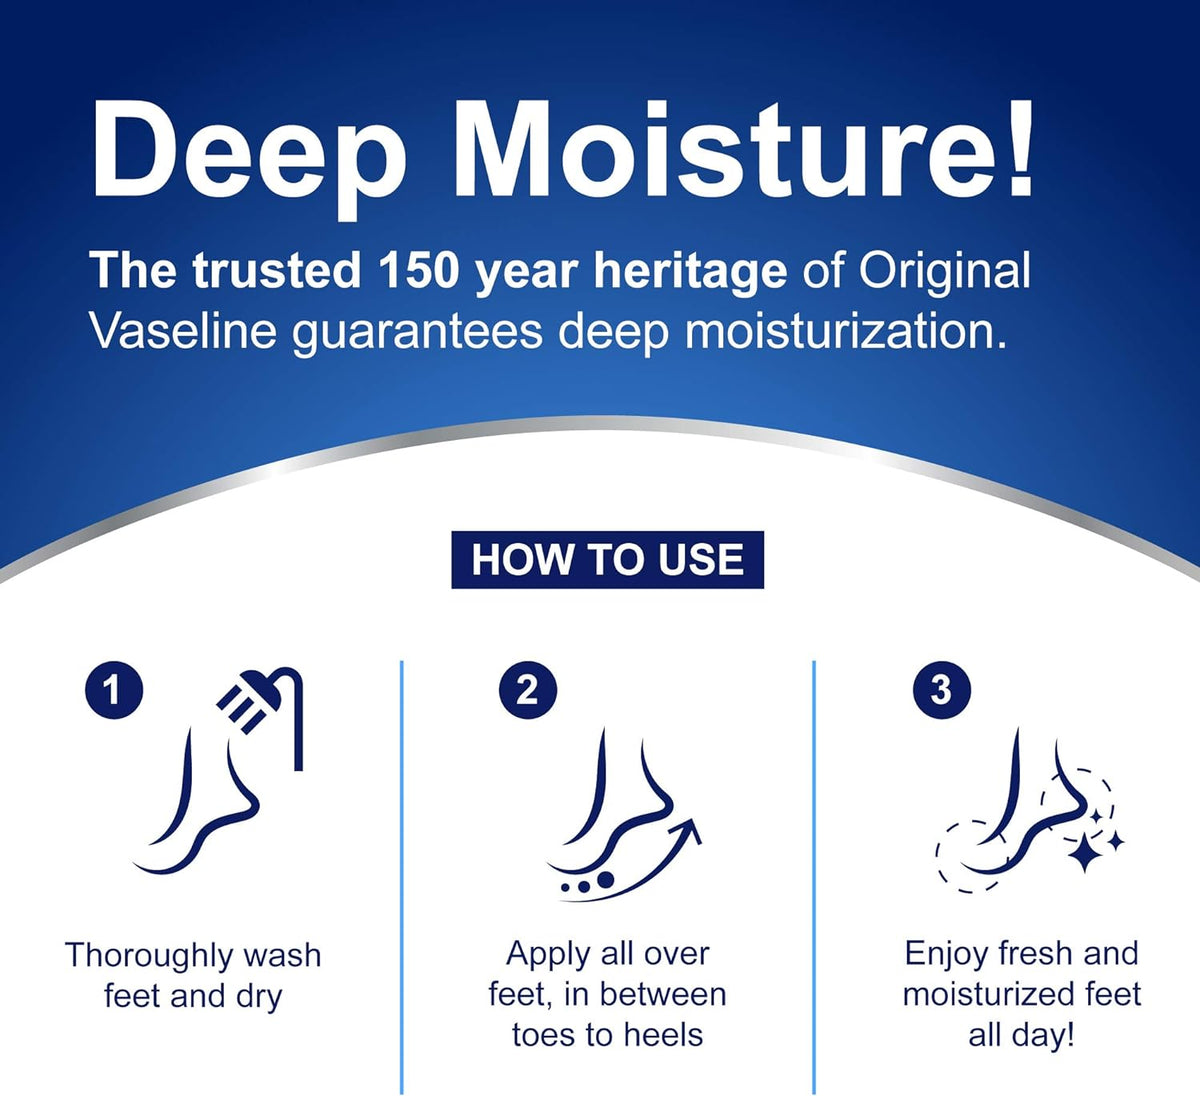 Vaseline Foot Cream Deep Moisture, 55gm